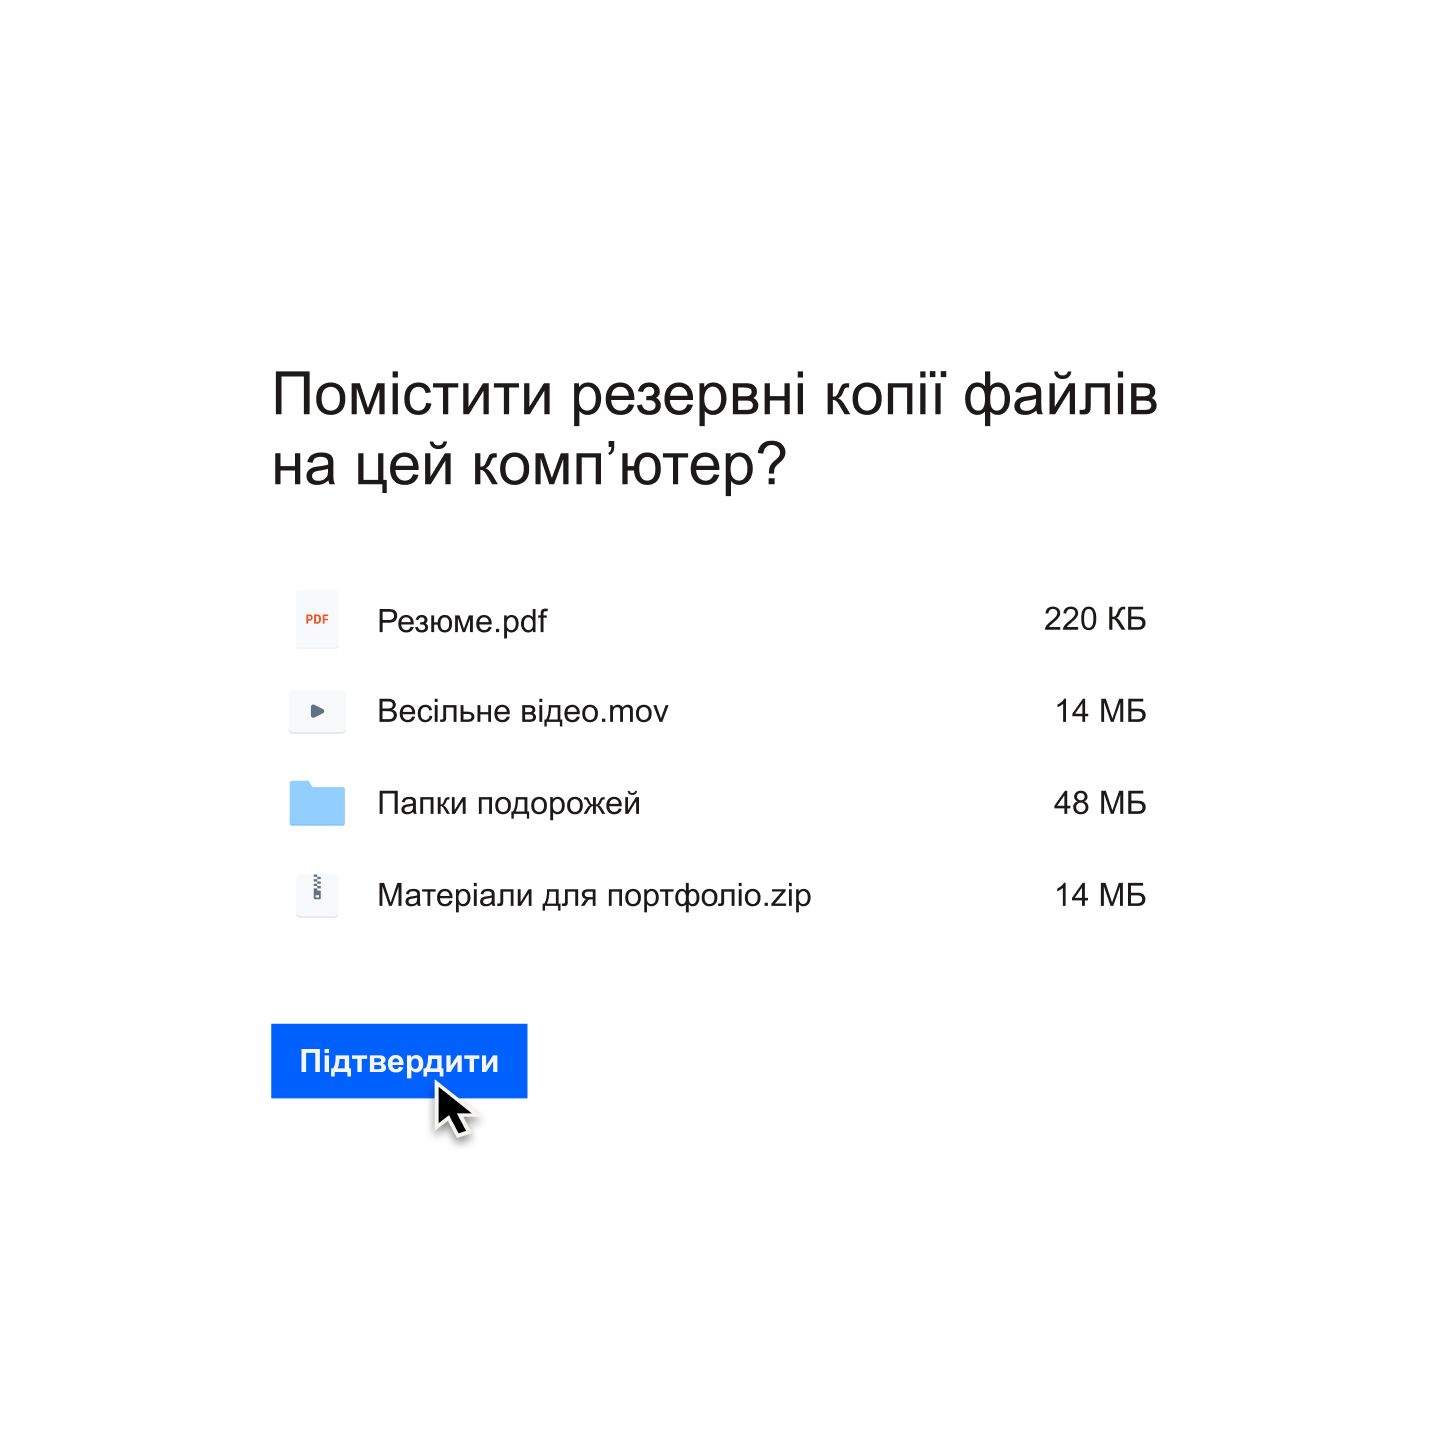 Користувач натискає синю кнопку «Підтвердити», щоб вибрати список файлів, резервну копію яких буде створено на його комп’ютері